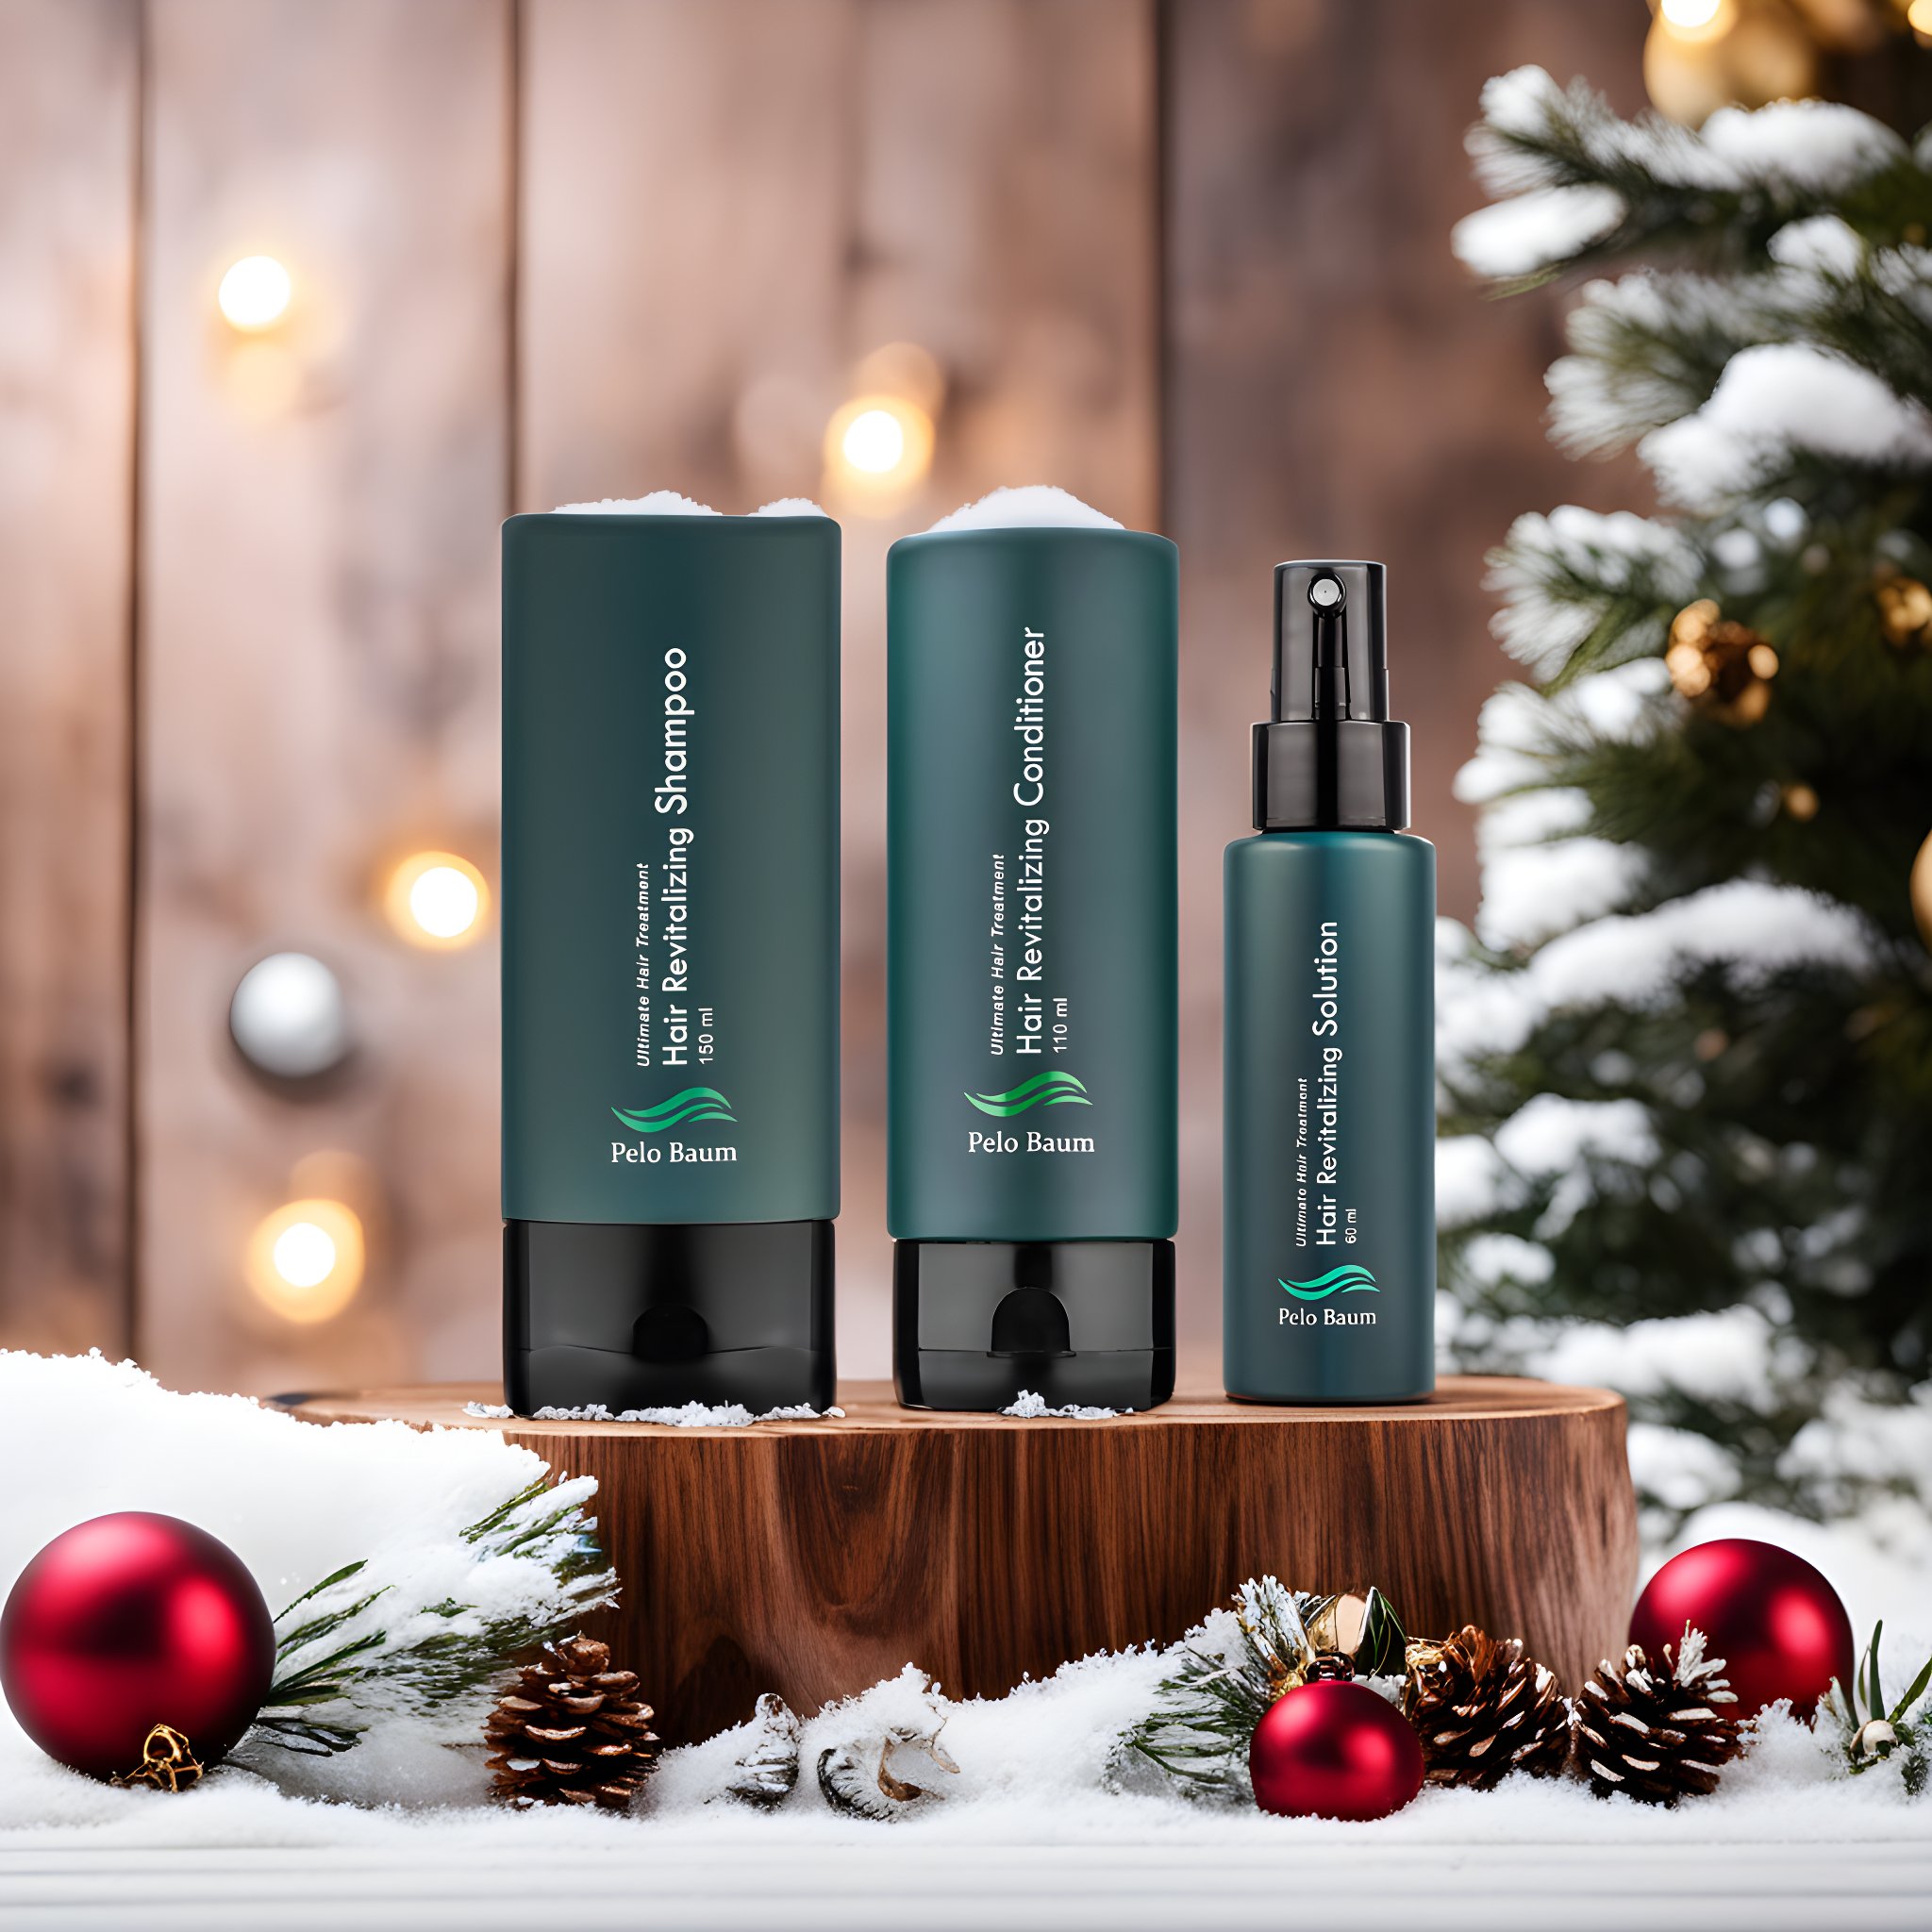 Vánoční balíček proti vypadávání vlasů: Pelo Baum sérum + šampon + kondicionér